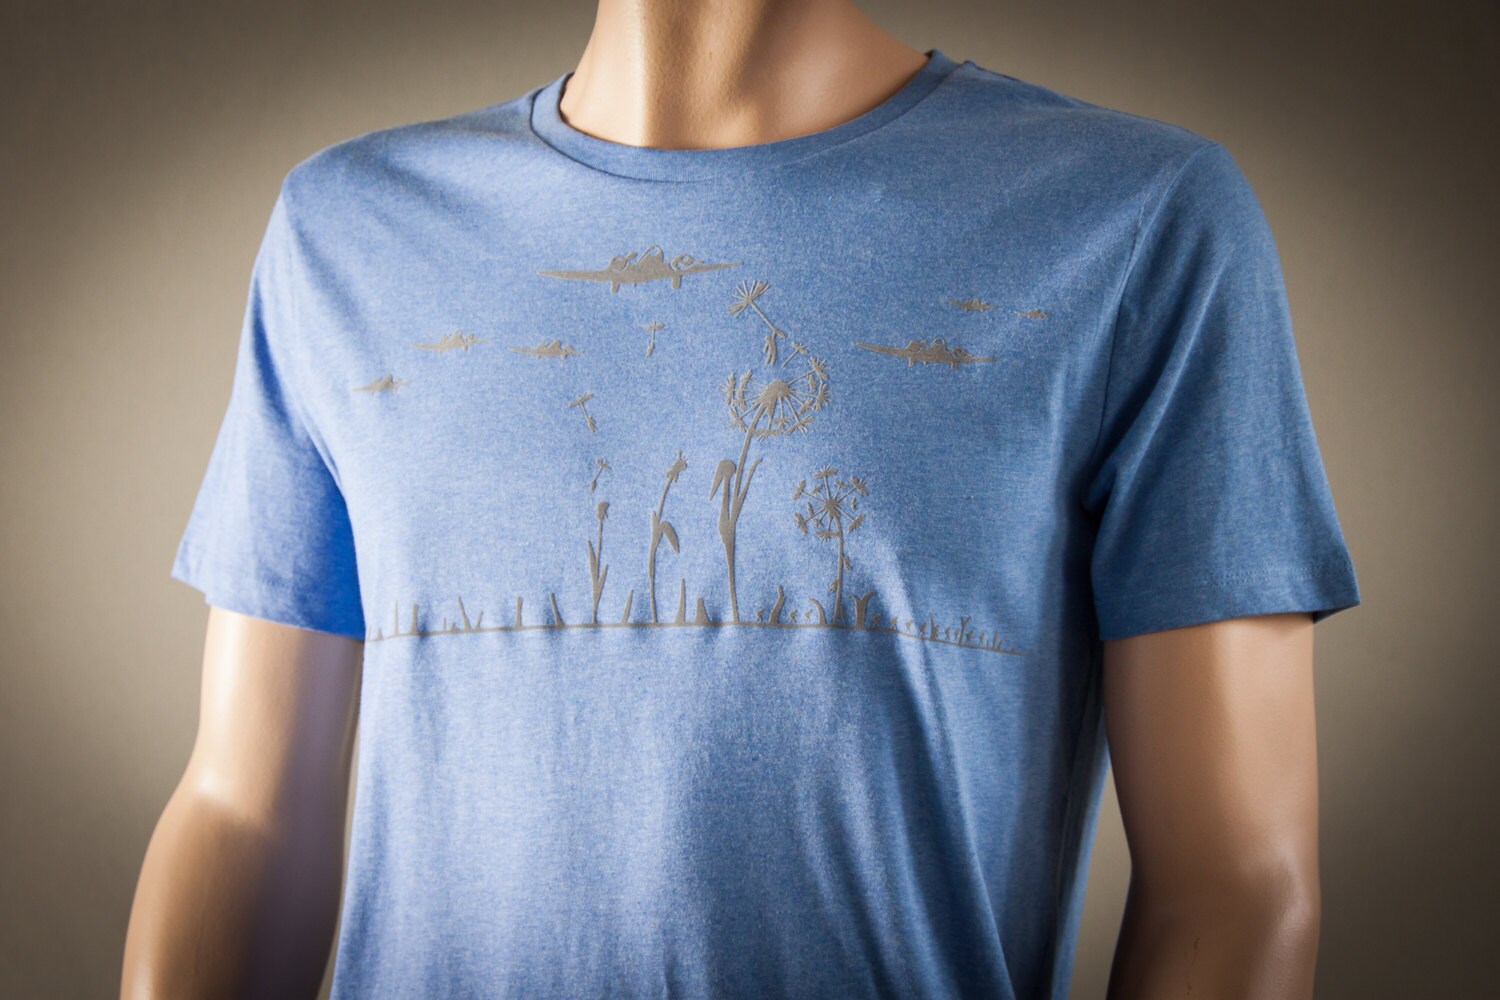 Pusteblume Shirt Für Männer Organic T-Shirt Military Bio Und Fair Hergestellt Flieger Blow Away Tshirt Mit Motiv Aus Flock Hellblau Meliert von naaknaak